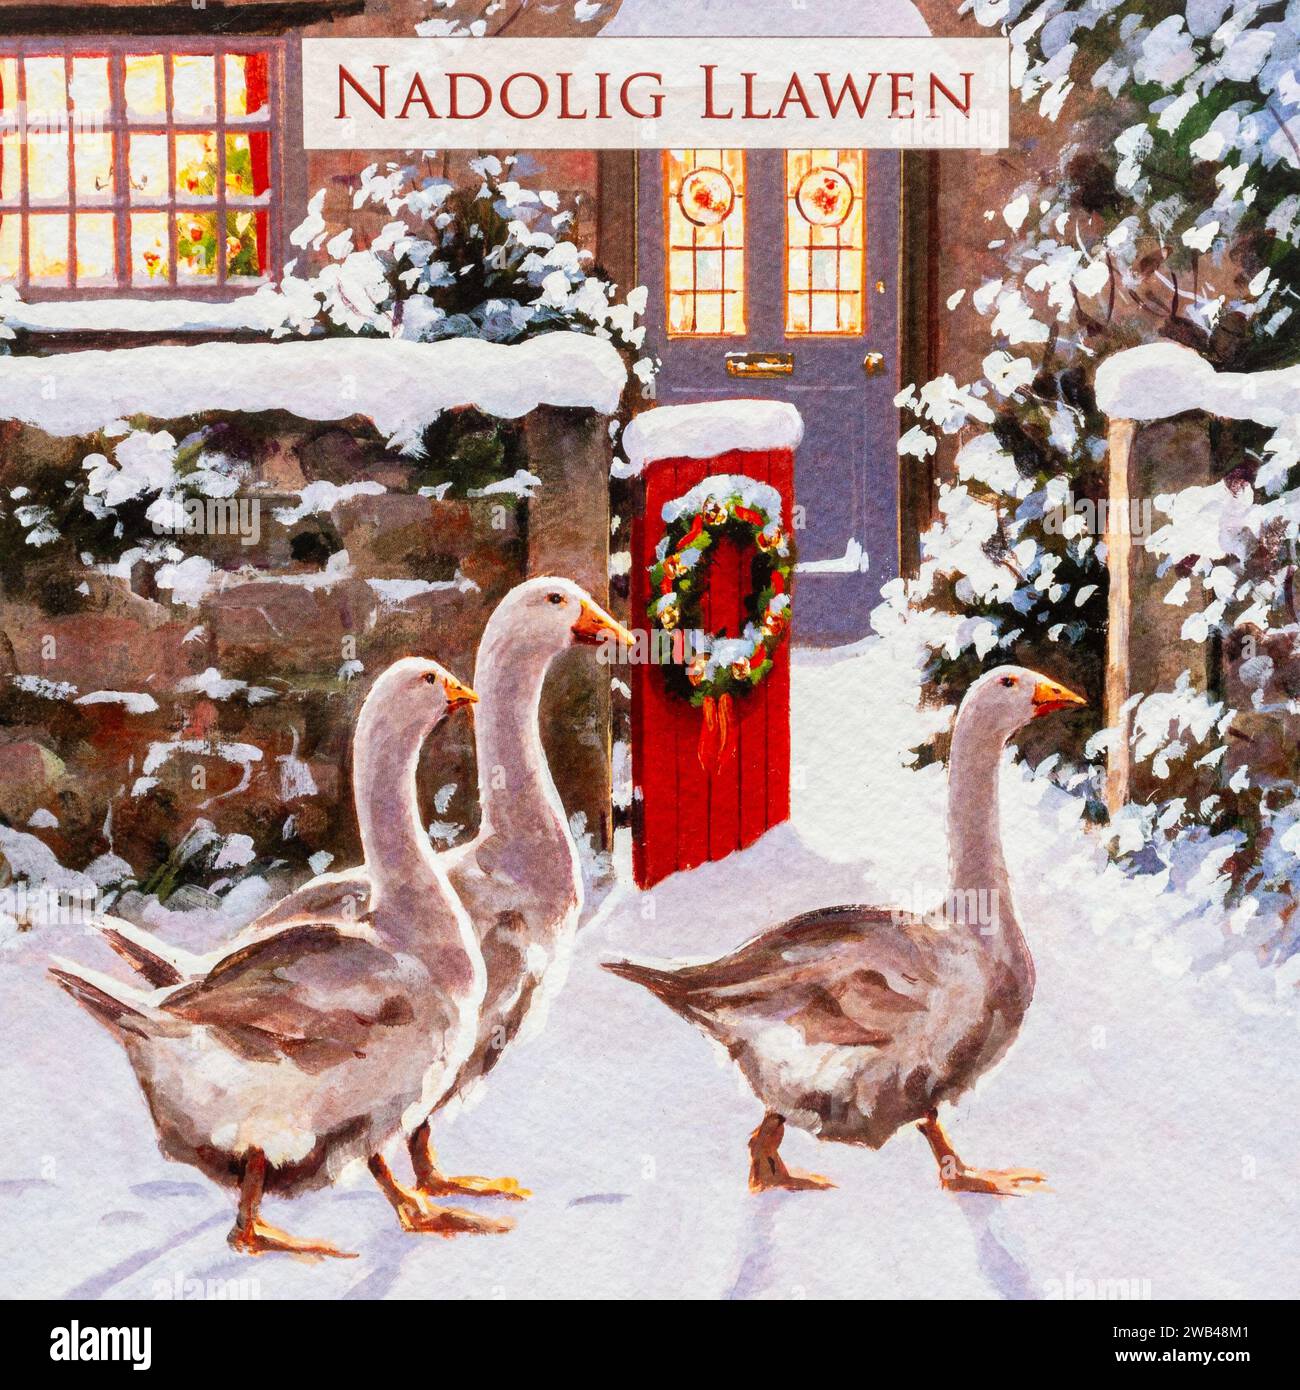 Nadolig Llawen, saluto in lingua gallese che significa buon Natale su un biglietto di Natale, Galles, Regno Unito Foto Stock